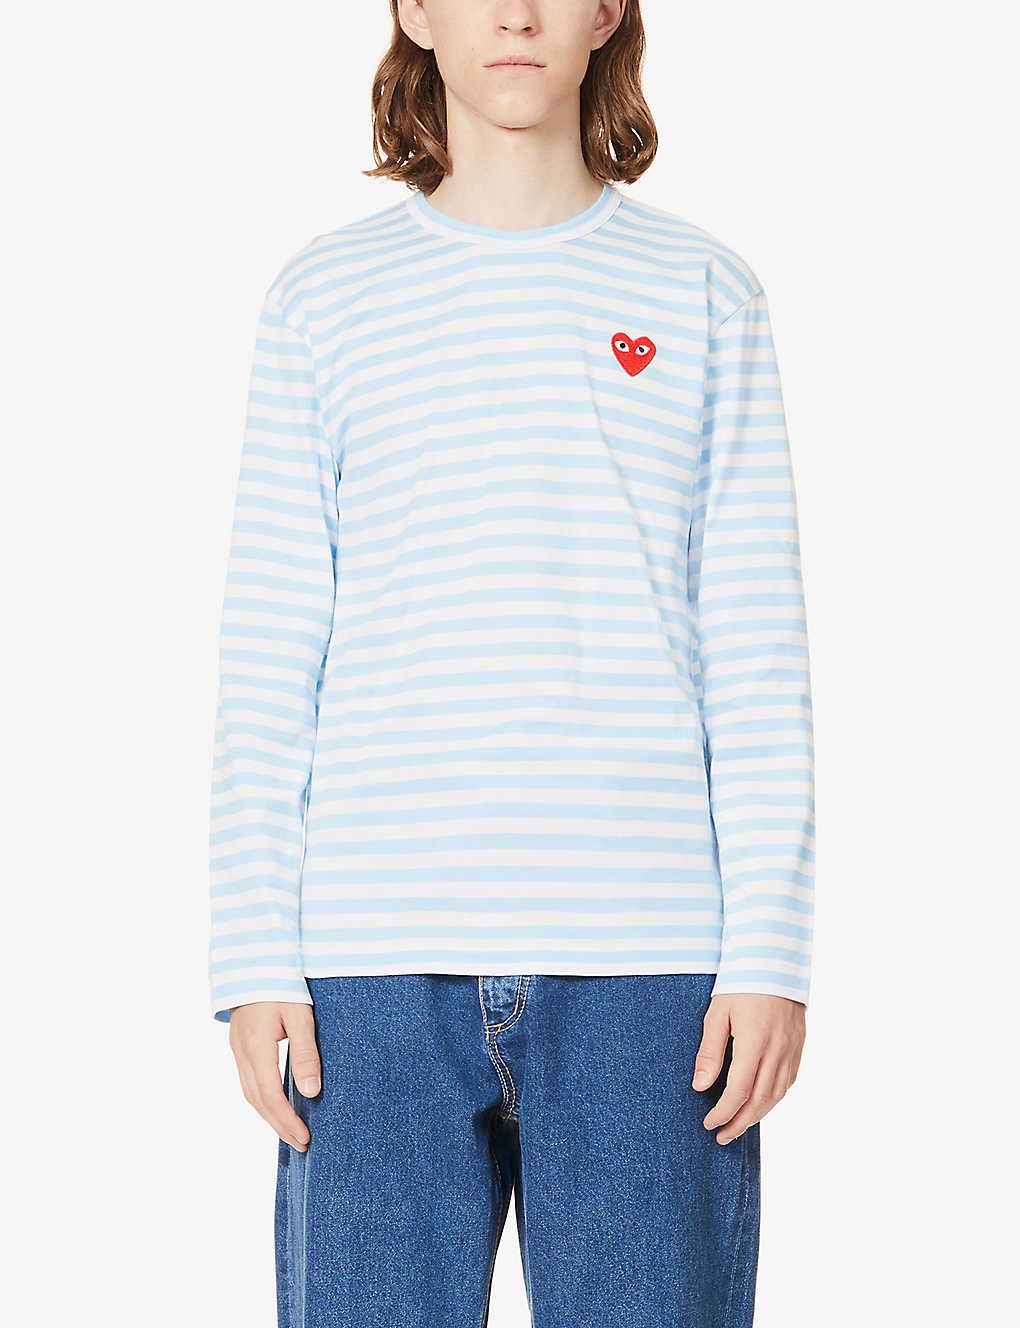 Shop Comme Des Garçons Play Comme Des Garcons Play Men's Blue Heart-appliqué Striped Cotton-jersey Top